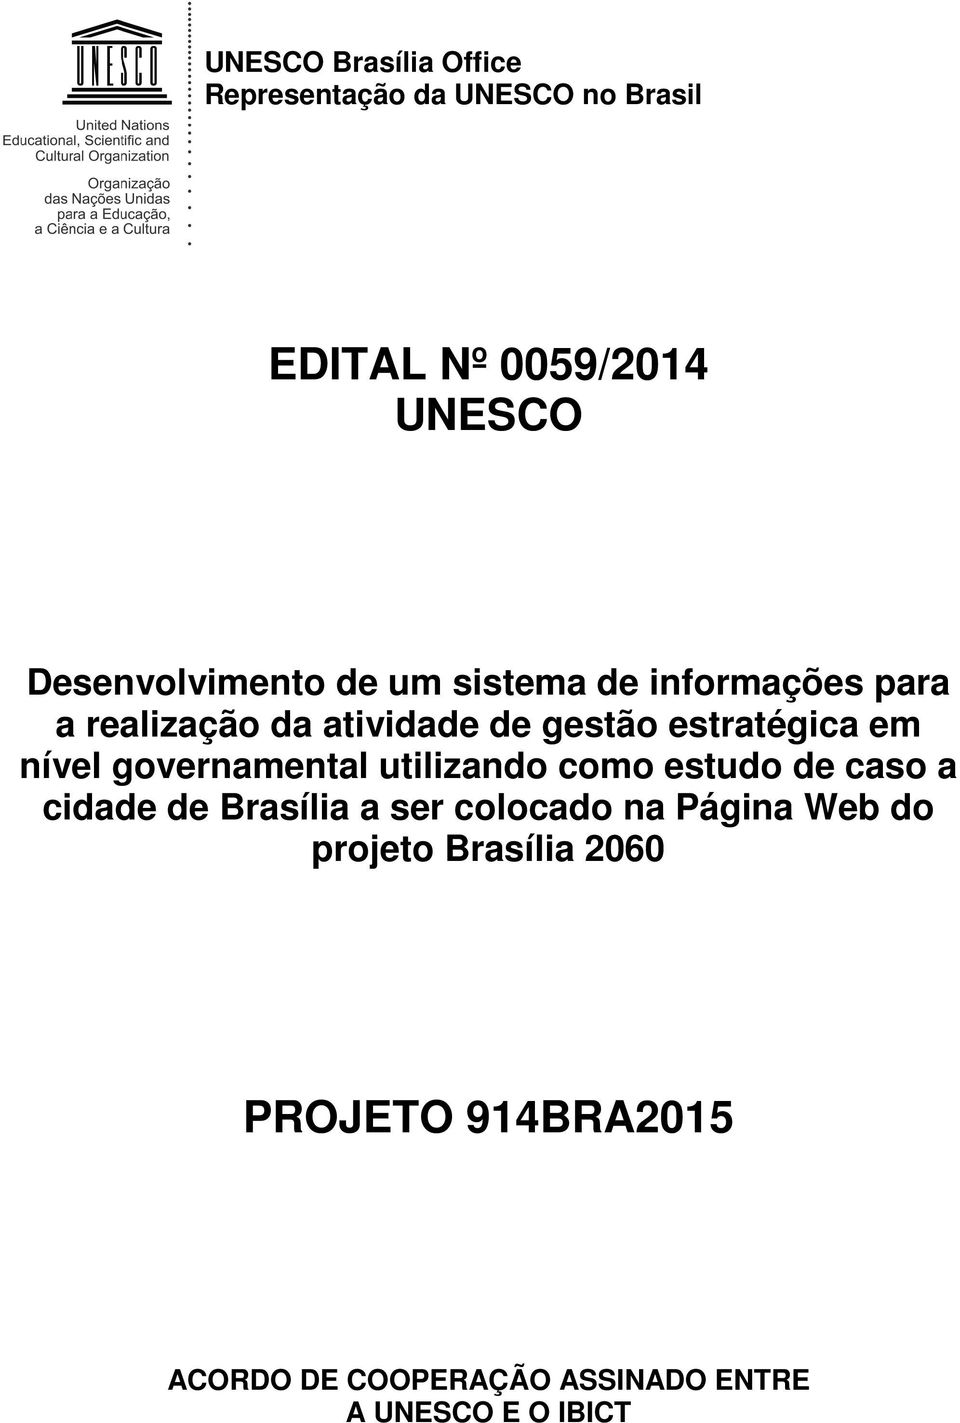 estratégica em nível governamental utilizando como estudo de caso a cidade de Brasília a ser